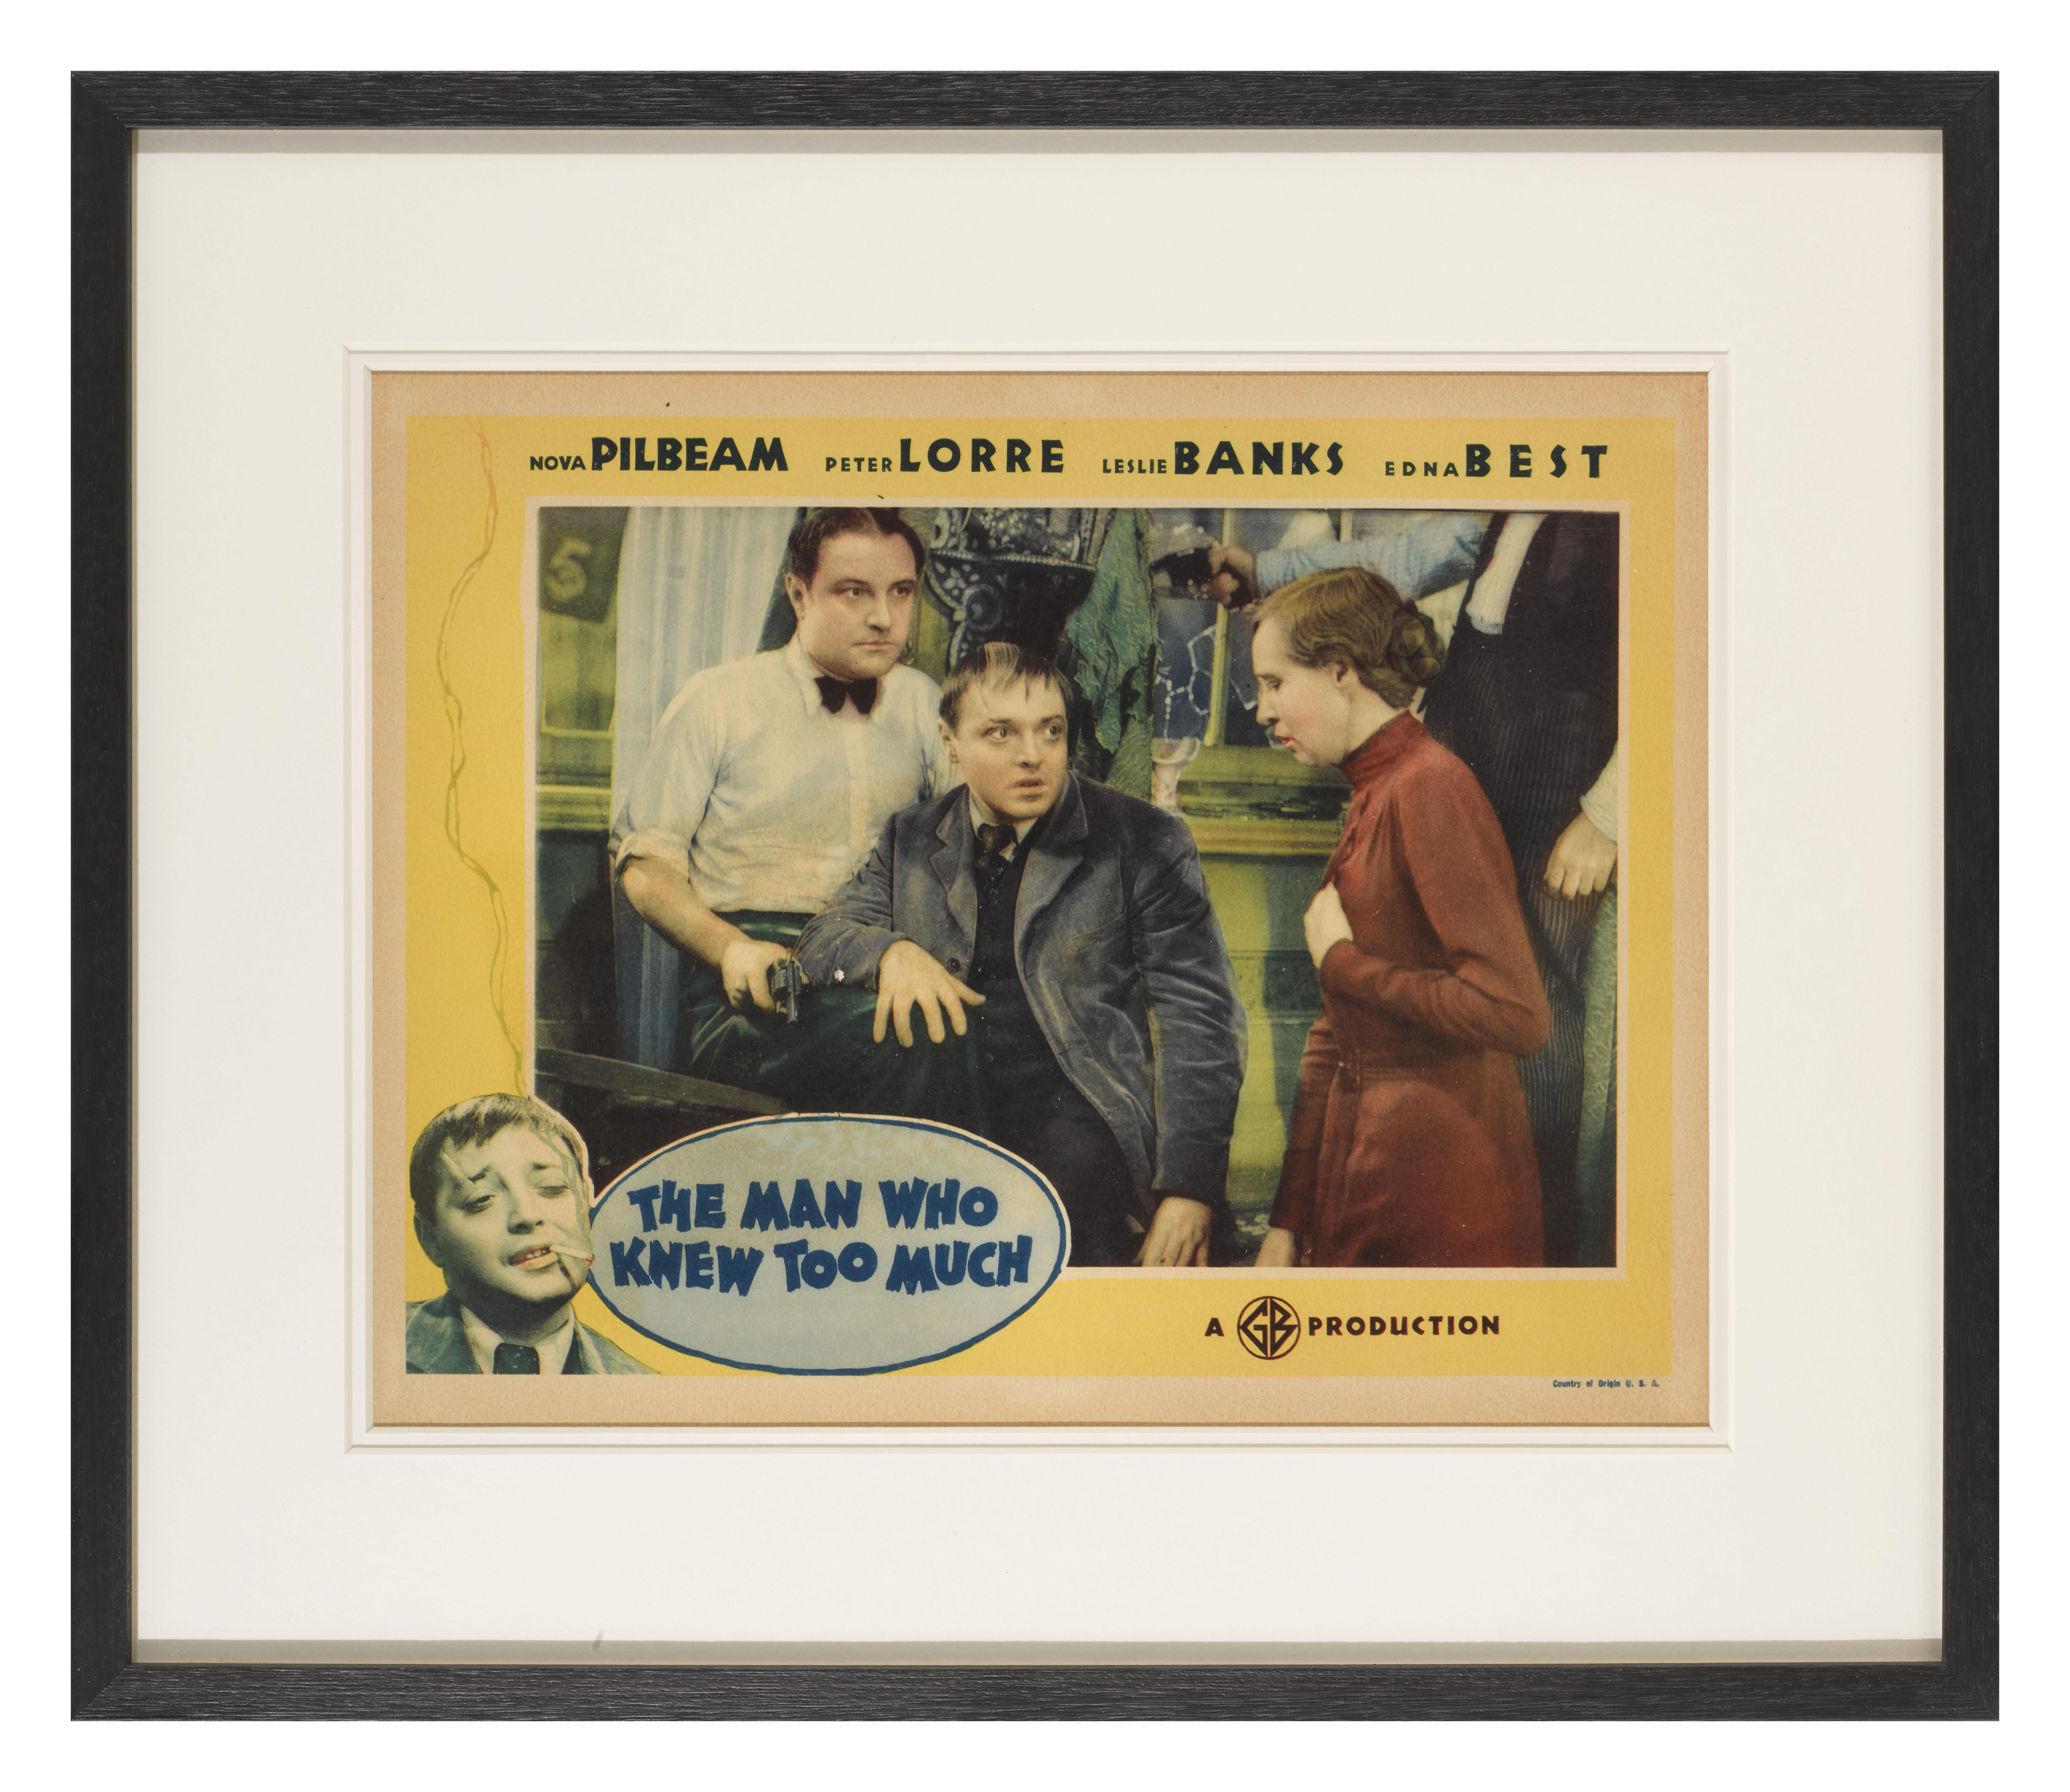 Eine seltene und wichtige Original-US-Lobby-Karte für Alfred Hitchcocks Spionage-Kriminalfilm The Man Who Knew Too Much von 1934.
In diesem Film spielte Peter Lorre die Hauptrolle.
Es sind nicht einmal 2 vollständige Kartensätze dieses Klassikers